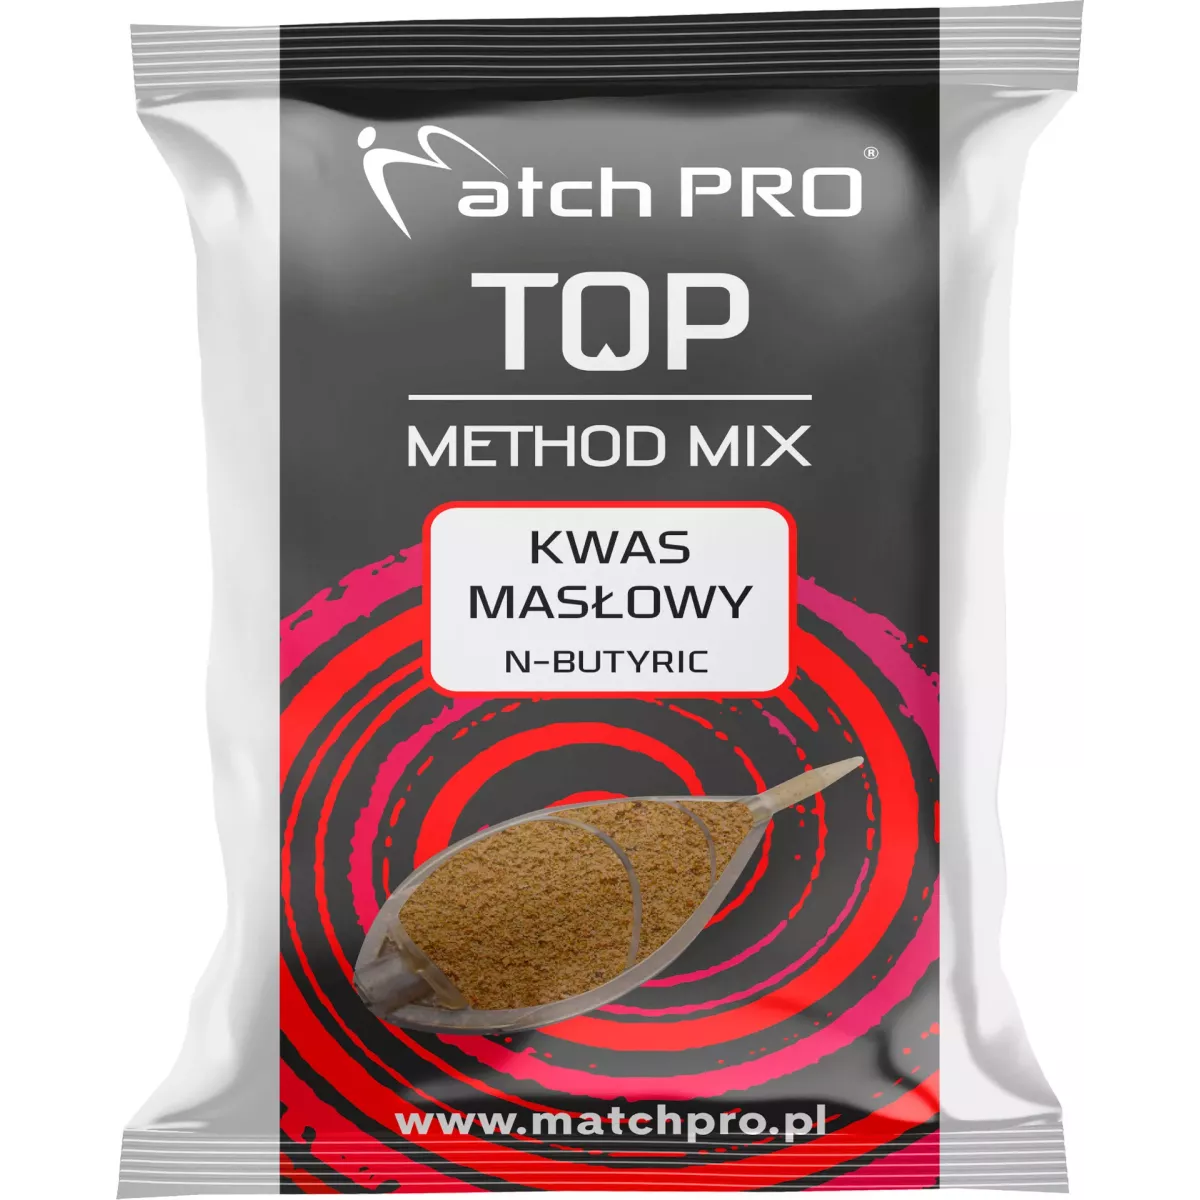 Zanęta MatchPro Method Mix TOP 700g - KWAS MASŁOWY